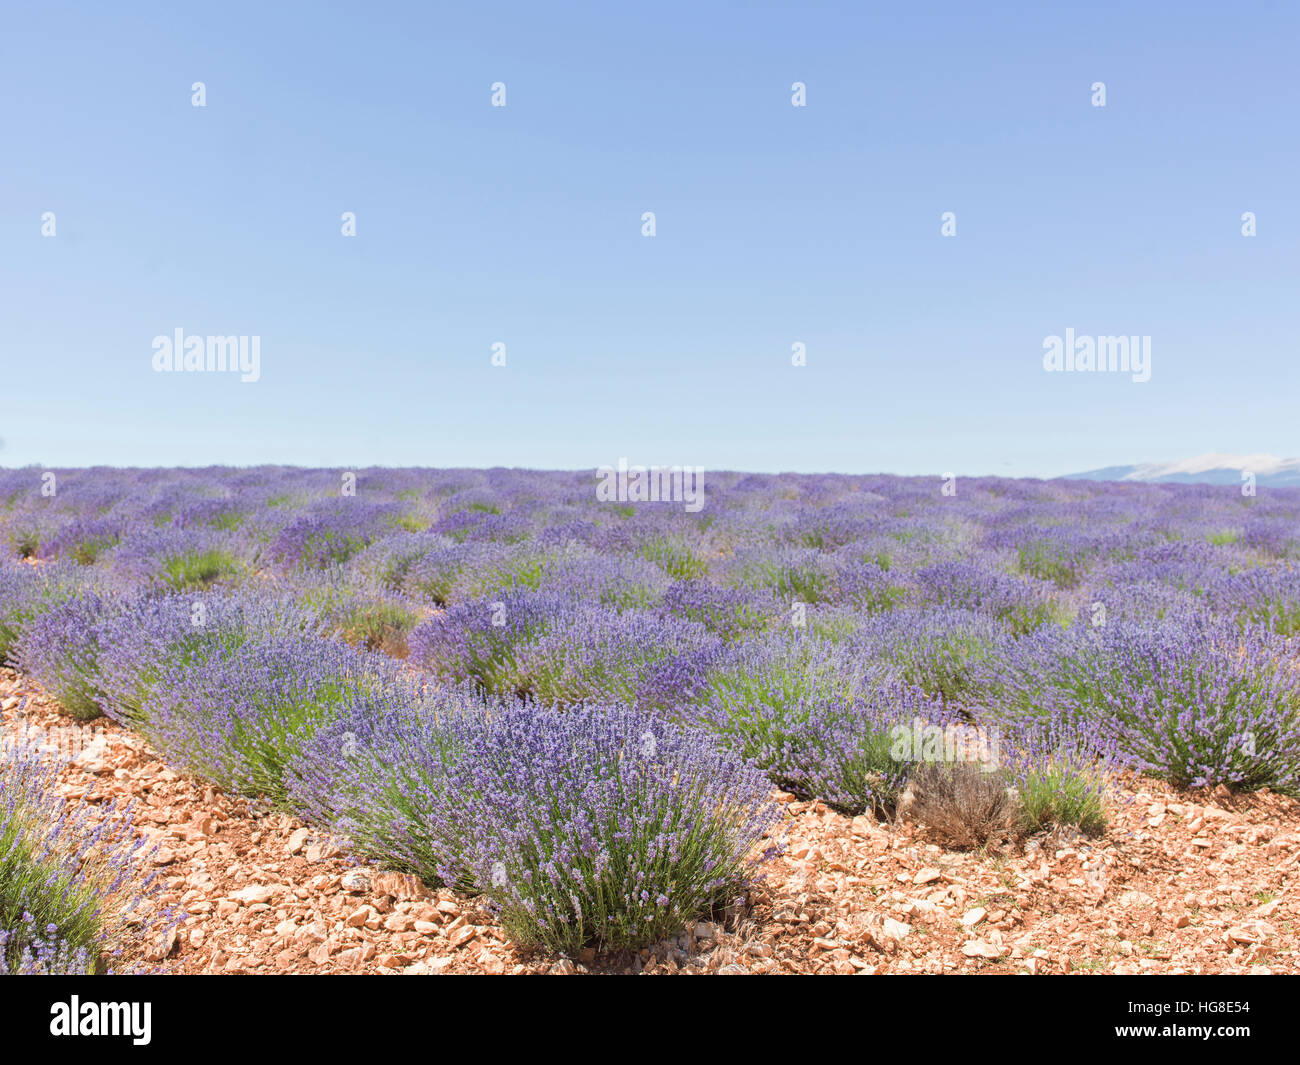 Lavender farm against clear sky Stock Photo